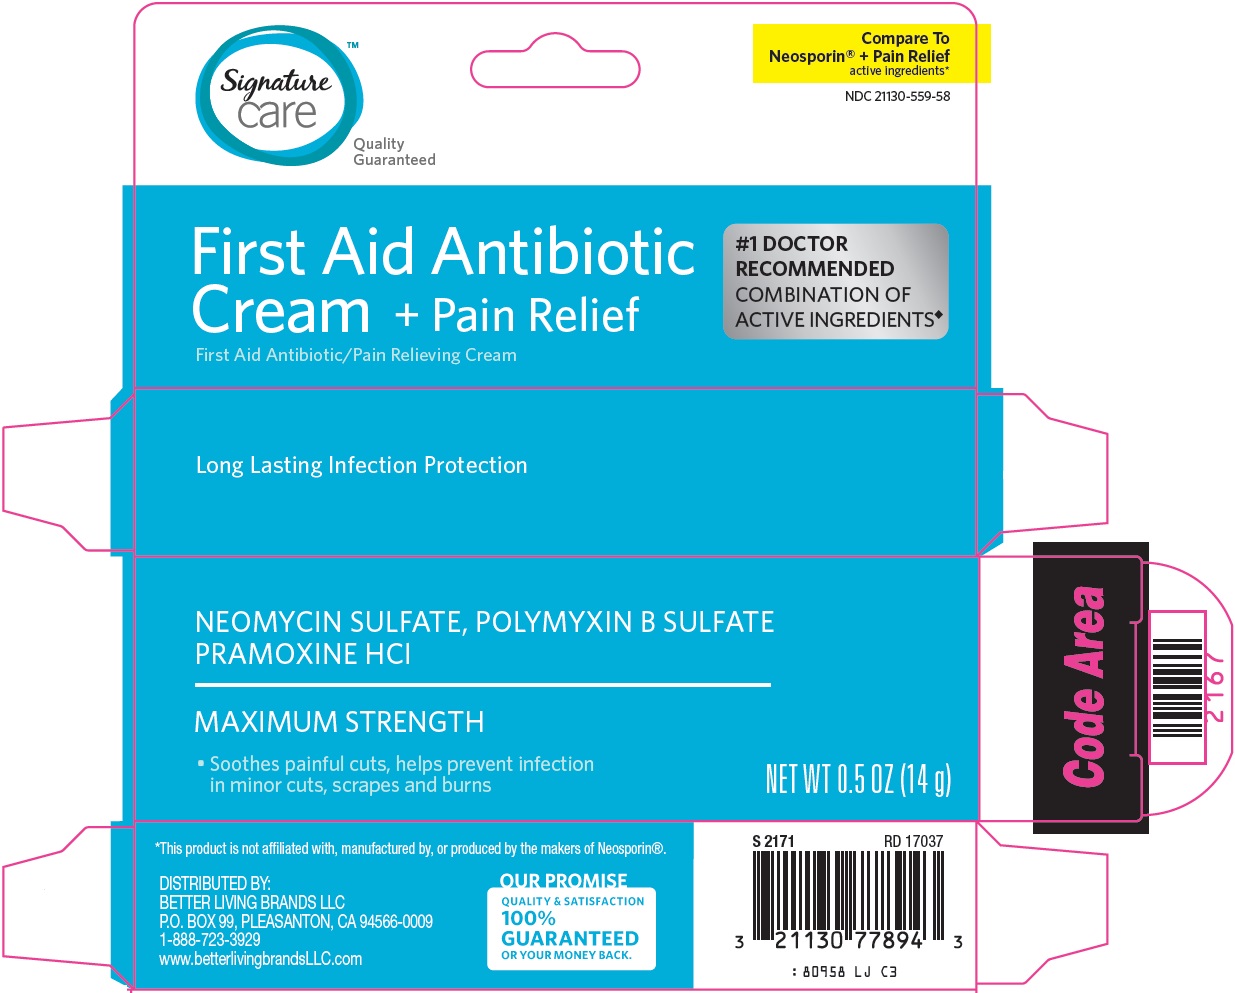 809-lj-first aid antibiotic cream + pain relief - 1.jpg